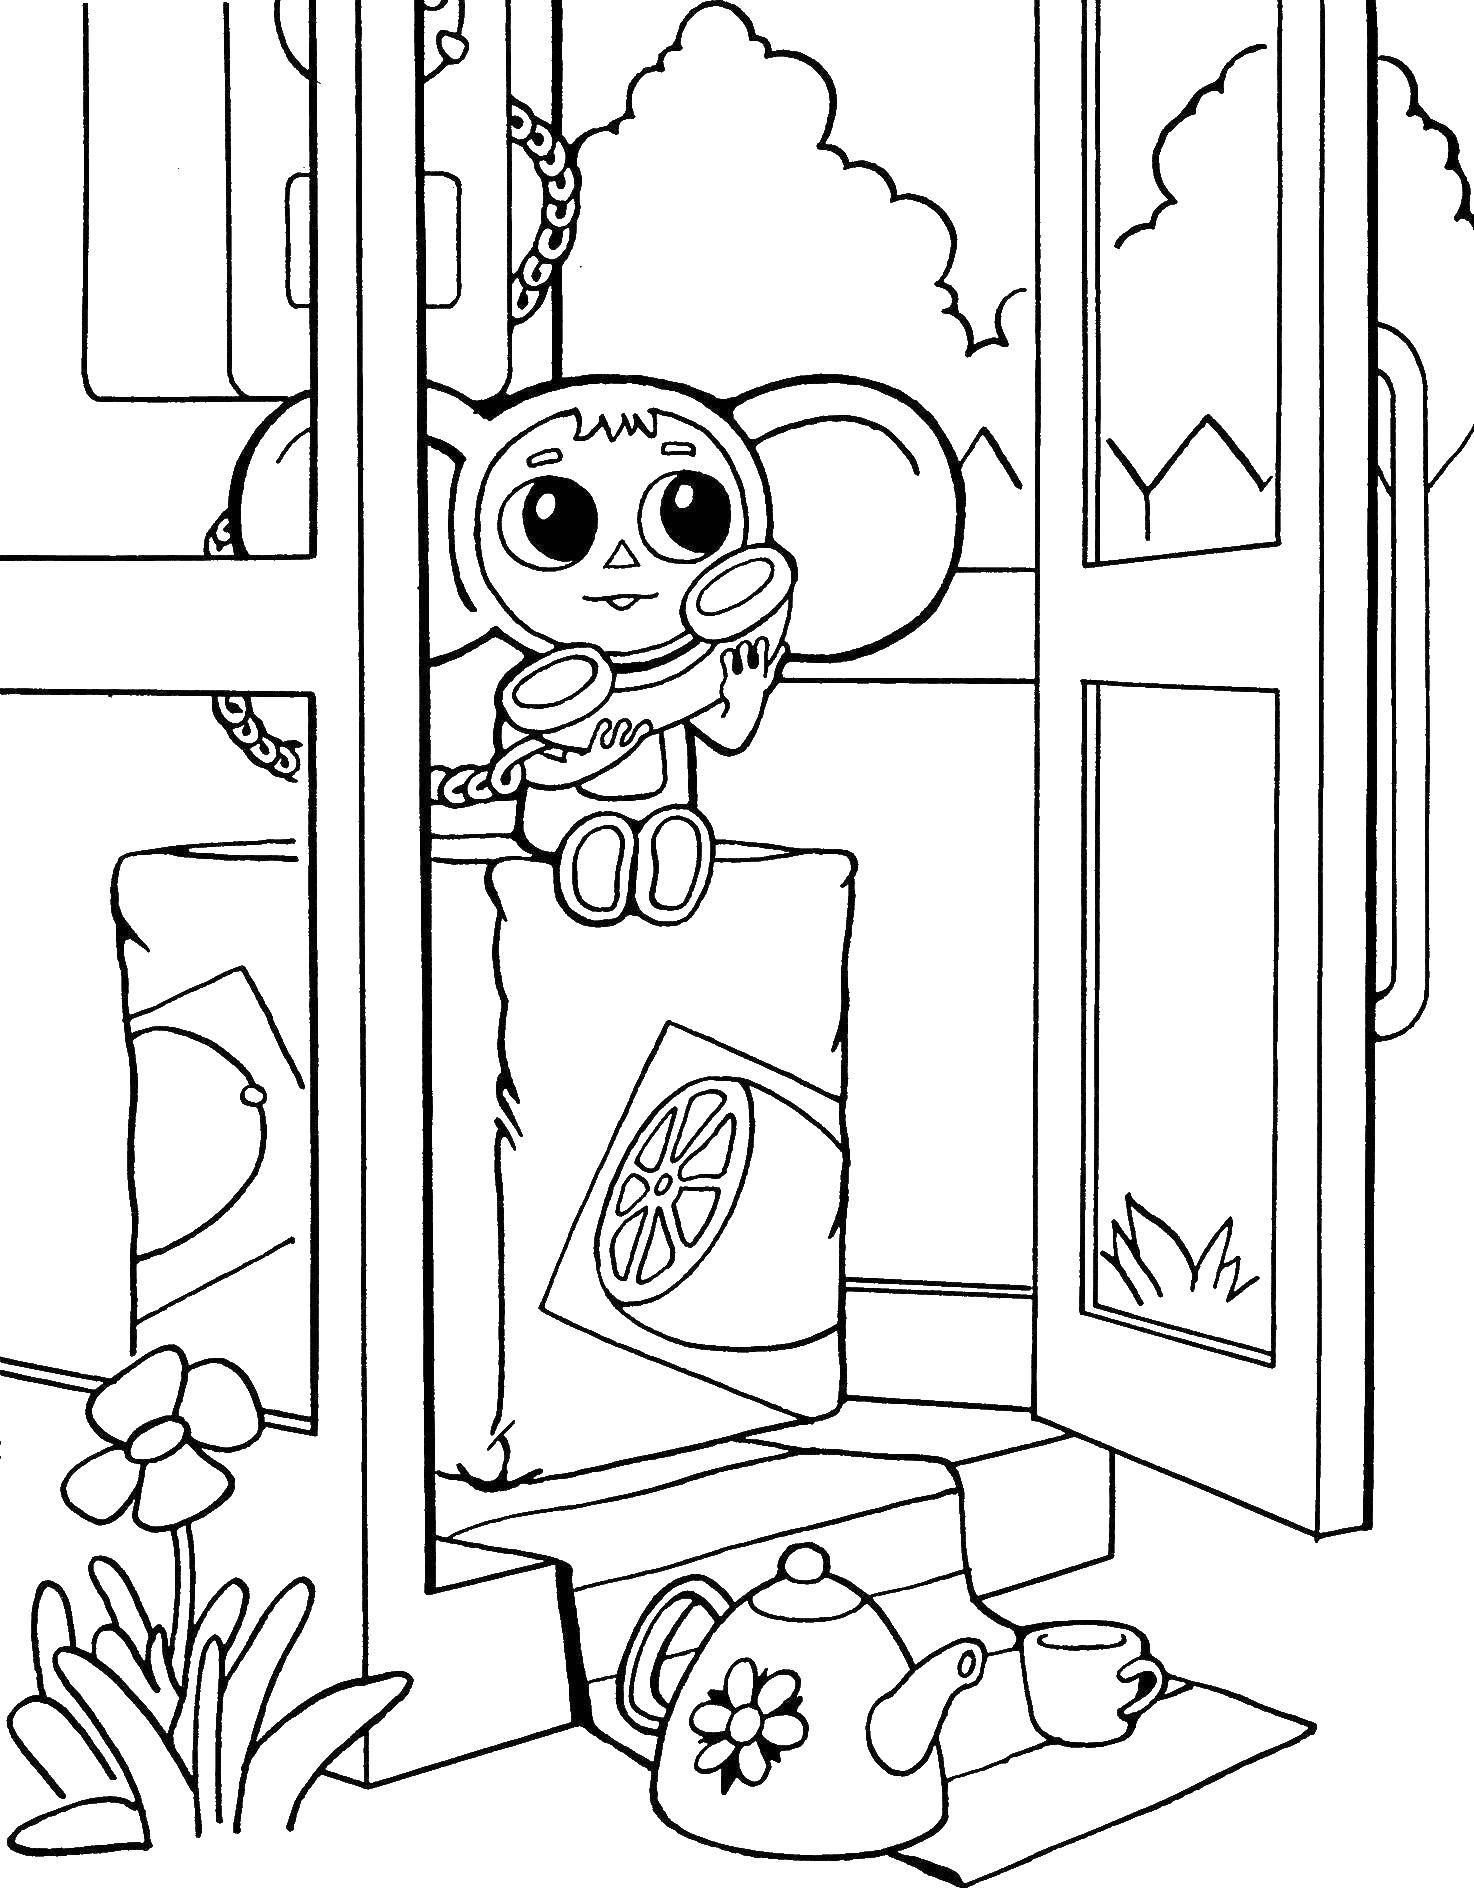 Coloring Cheburashka in a phone booth. Category cartoons. Tags:  Cheburashka.